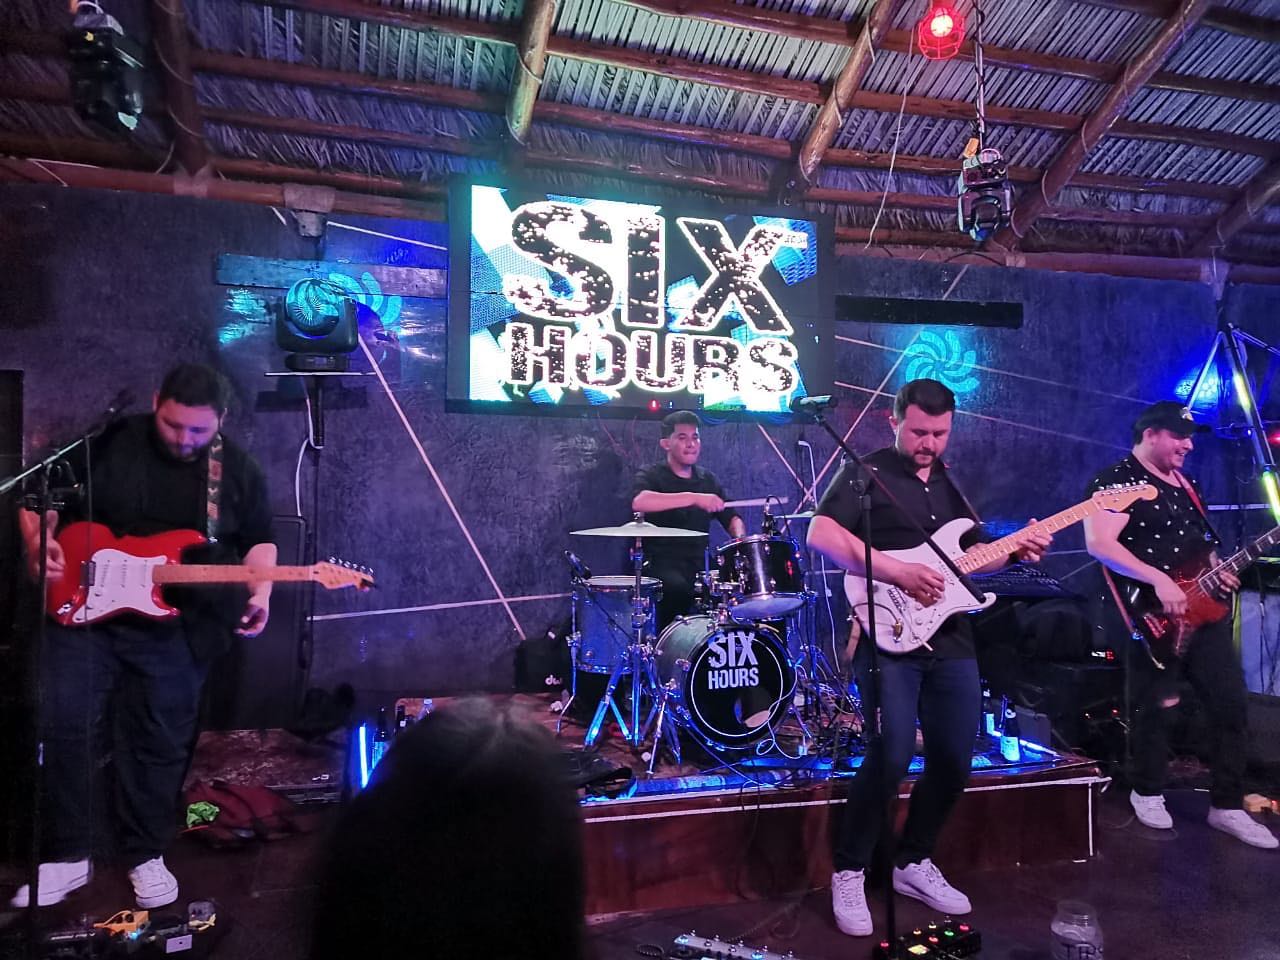 Six-Hours-Band "Six Hours" live at Tekila Bar